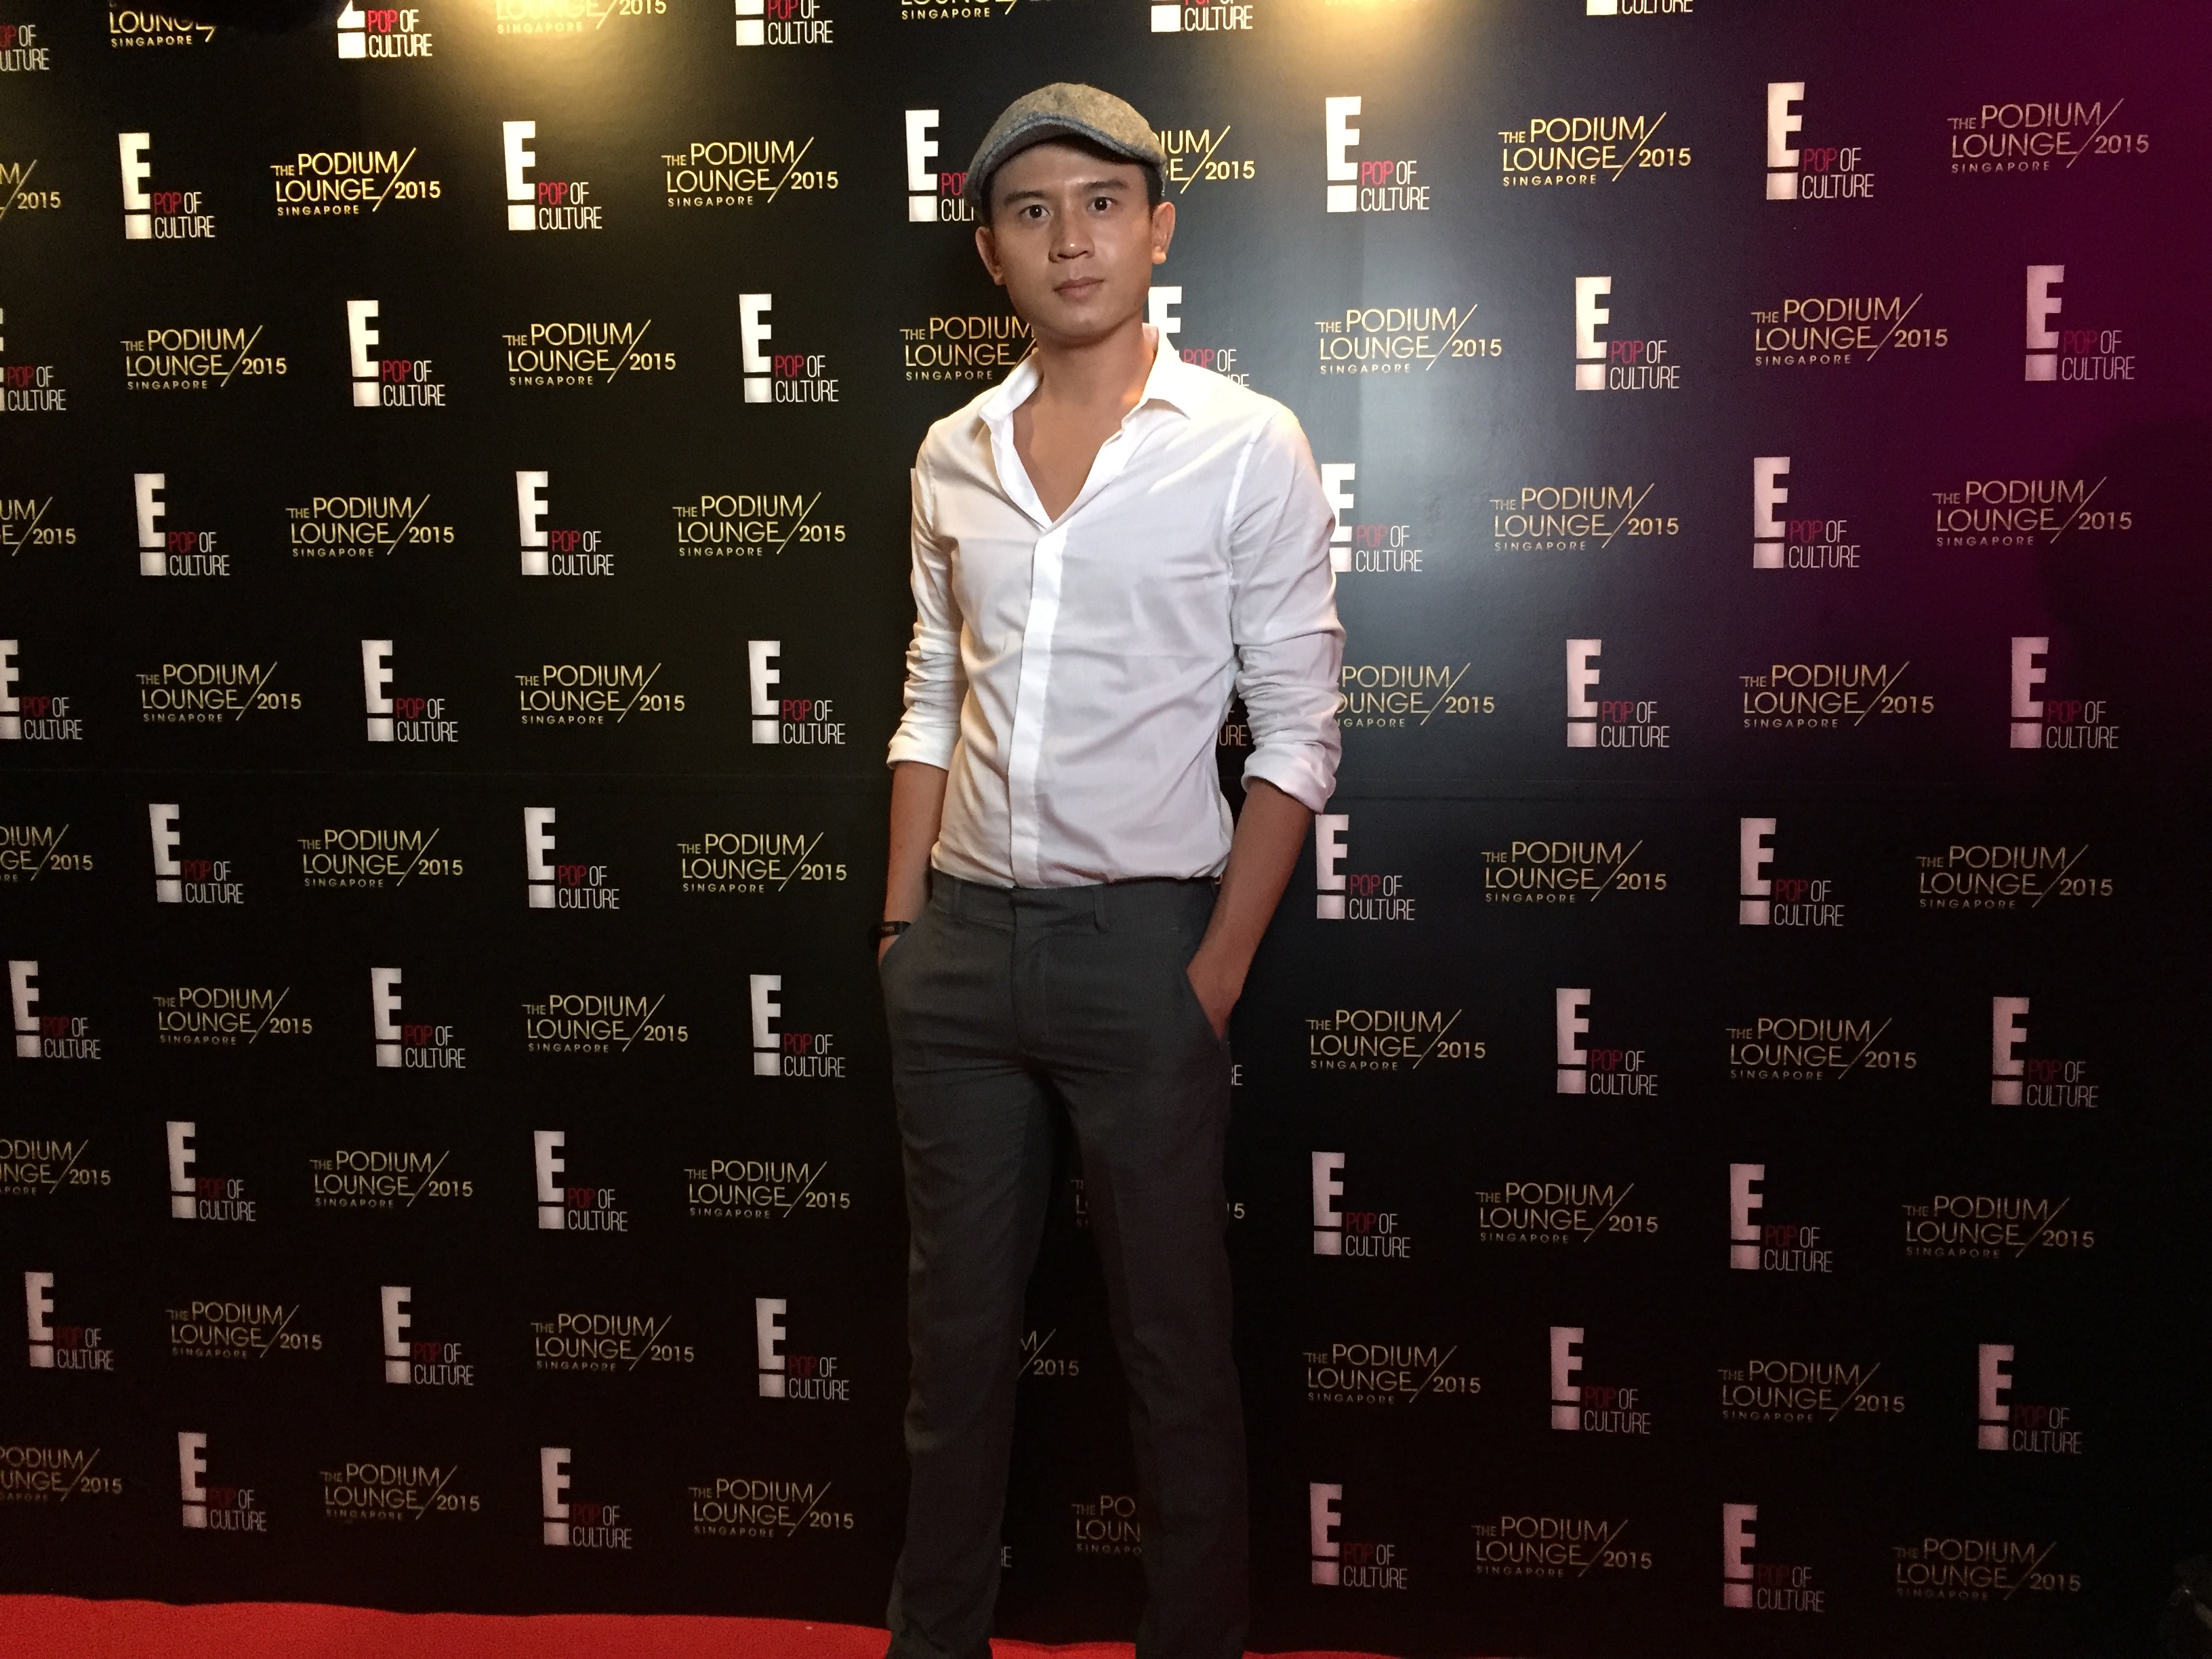 Benjamin Tan at an event for The Podium Lounge Singapore - Singapore Grand Prix 2015